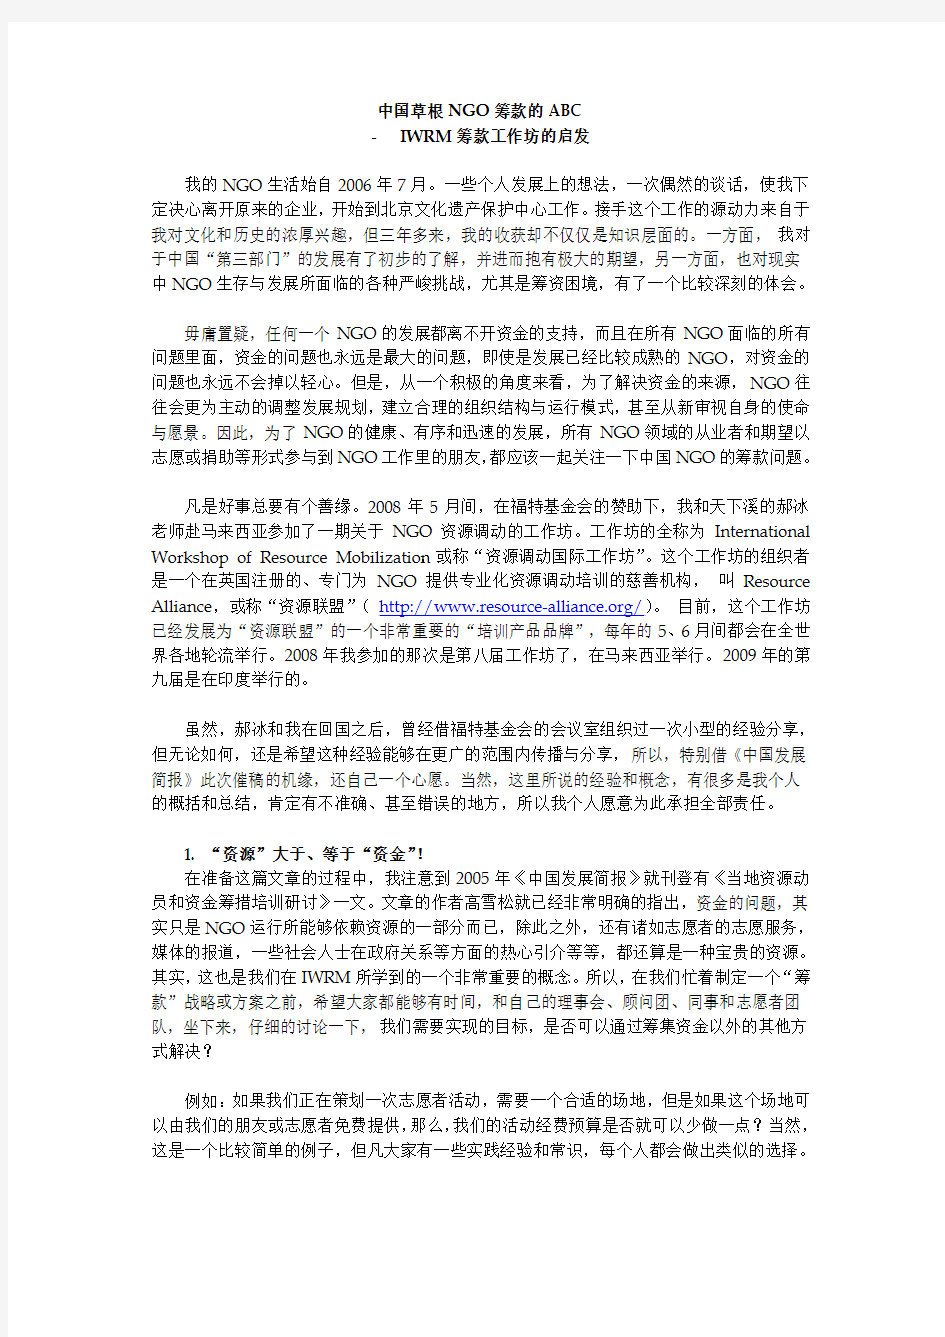 中国草根NGO筹款的ABC 发展简报筹款文章 20091120